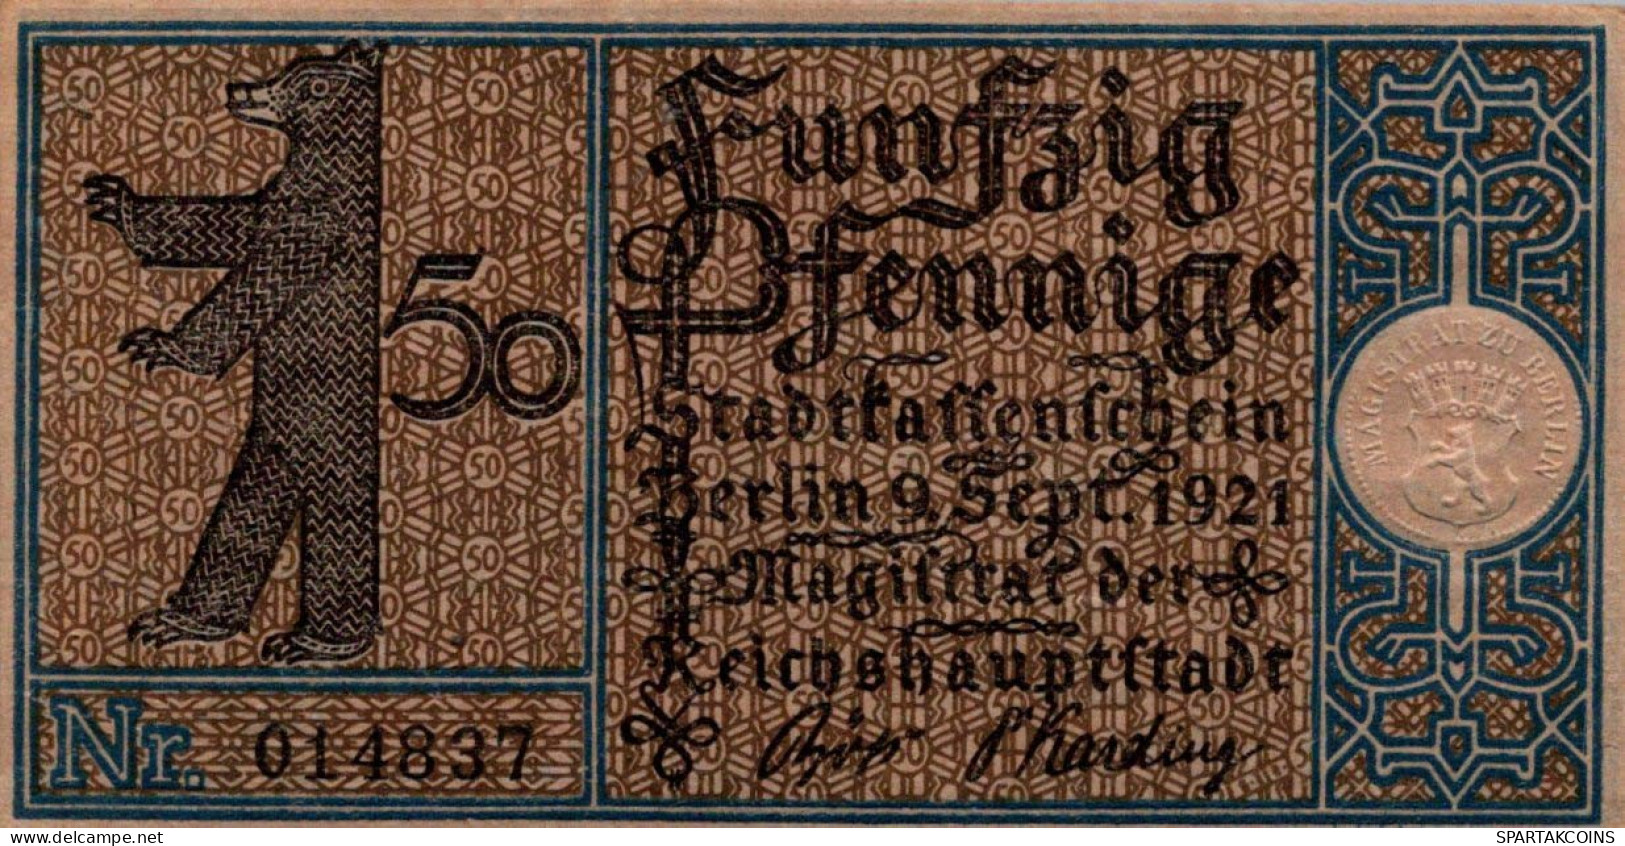 50 PFENNIG 1921 Stadt BERLIN UNC DEUTSCHLAND Notgeld Banknote #PA193 - [11] Emissions Locales